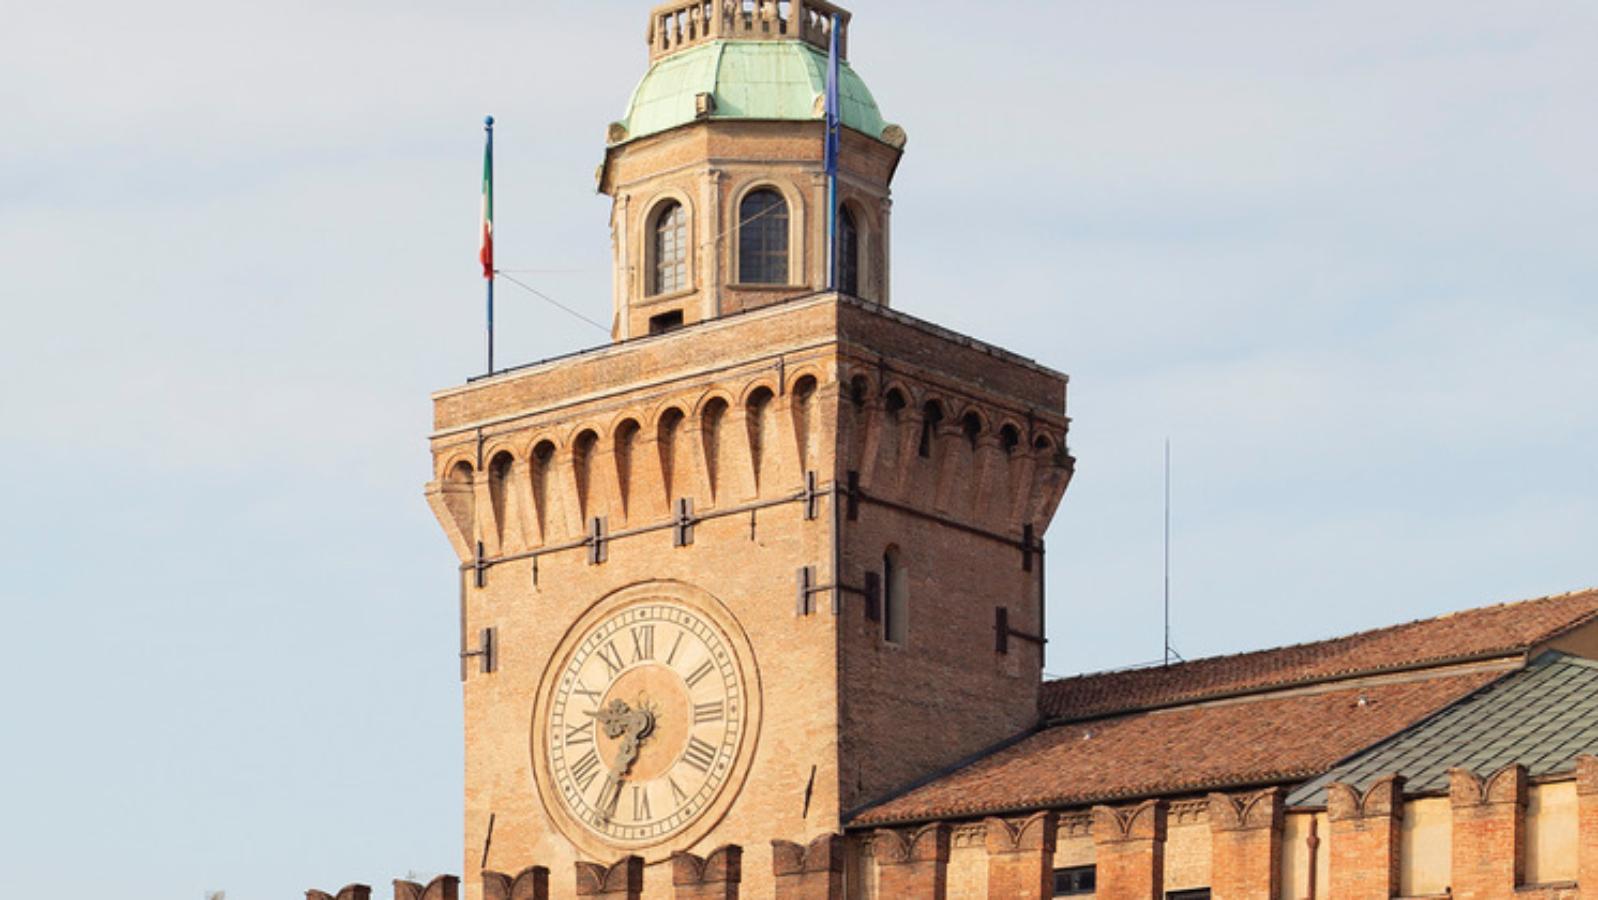 Torre dell'Orologio, Bologna